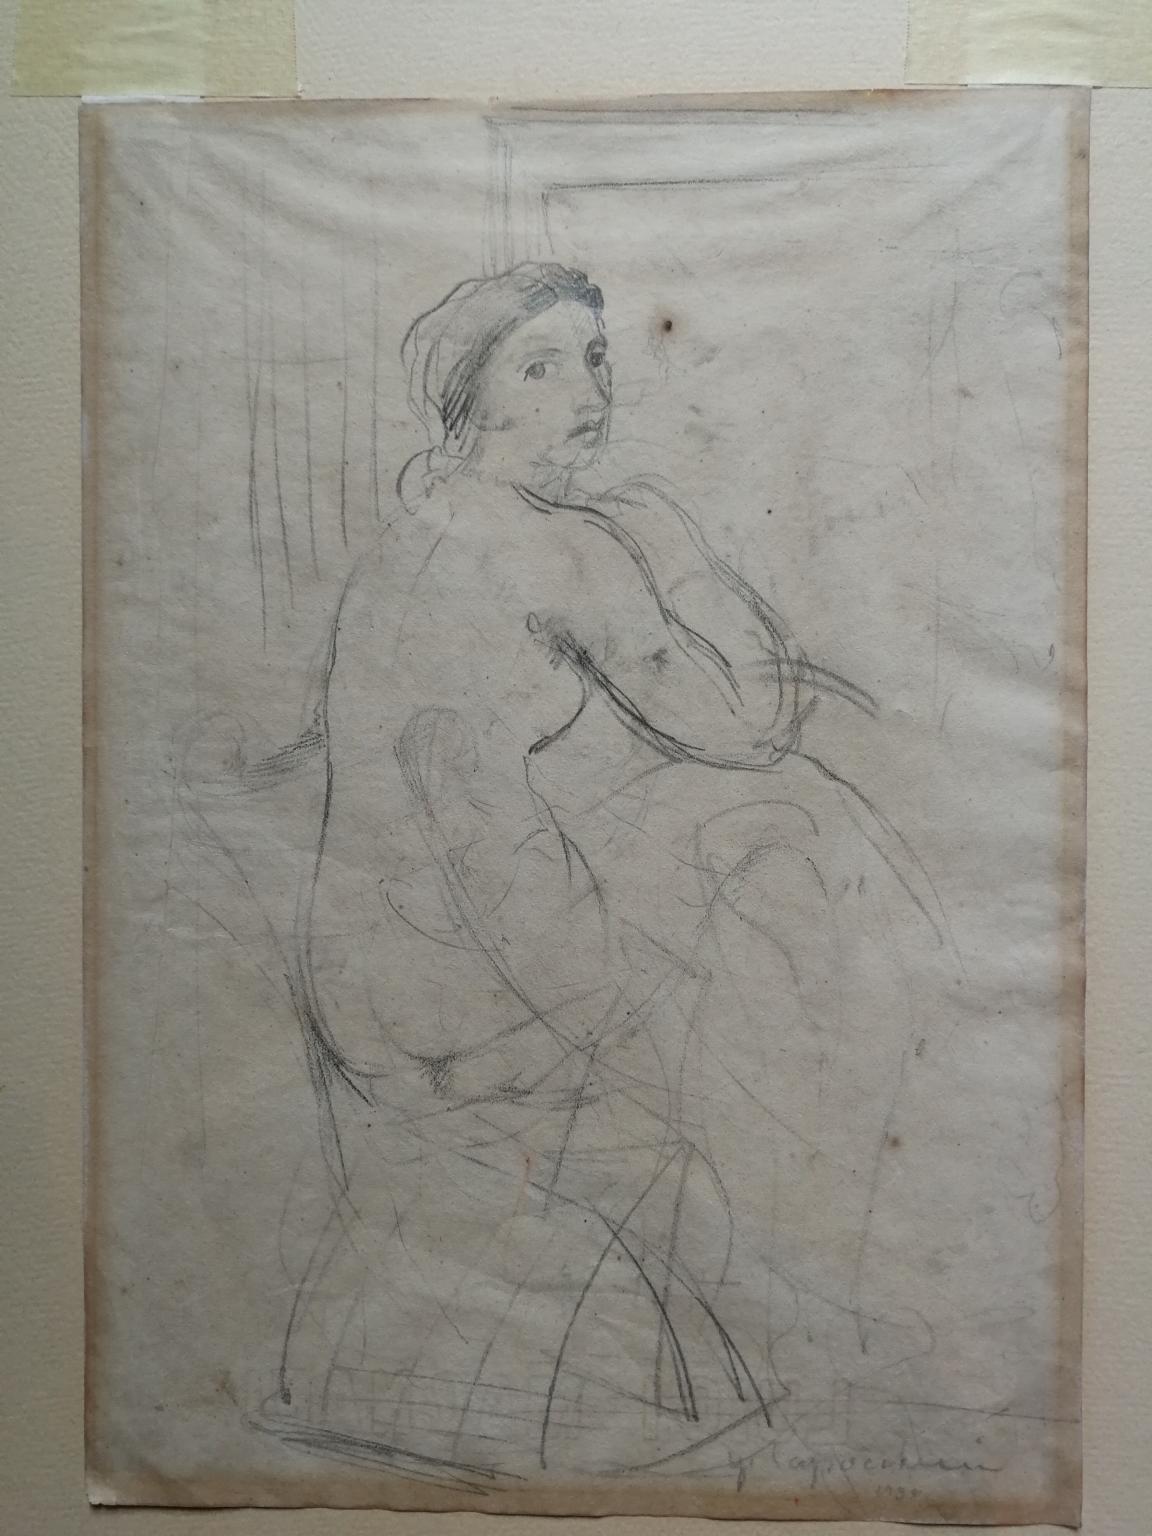 Ugo Capocchini Nude - Disegno fronte retro figurativo toscano nudo femminile del XX secolo